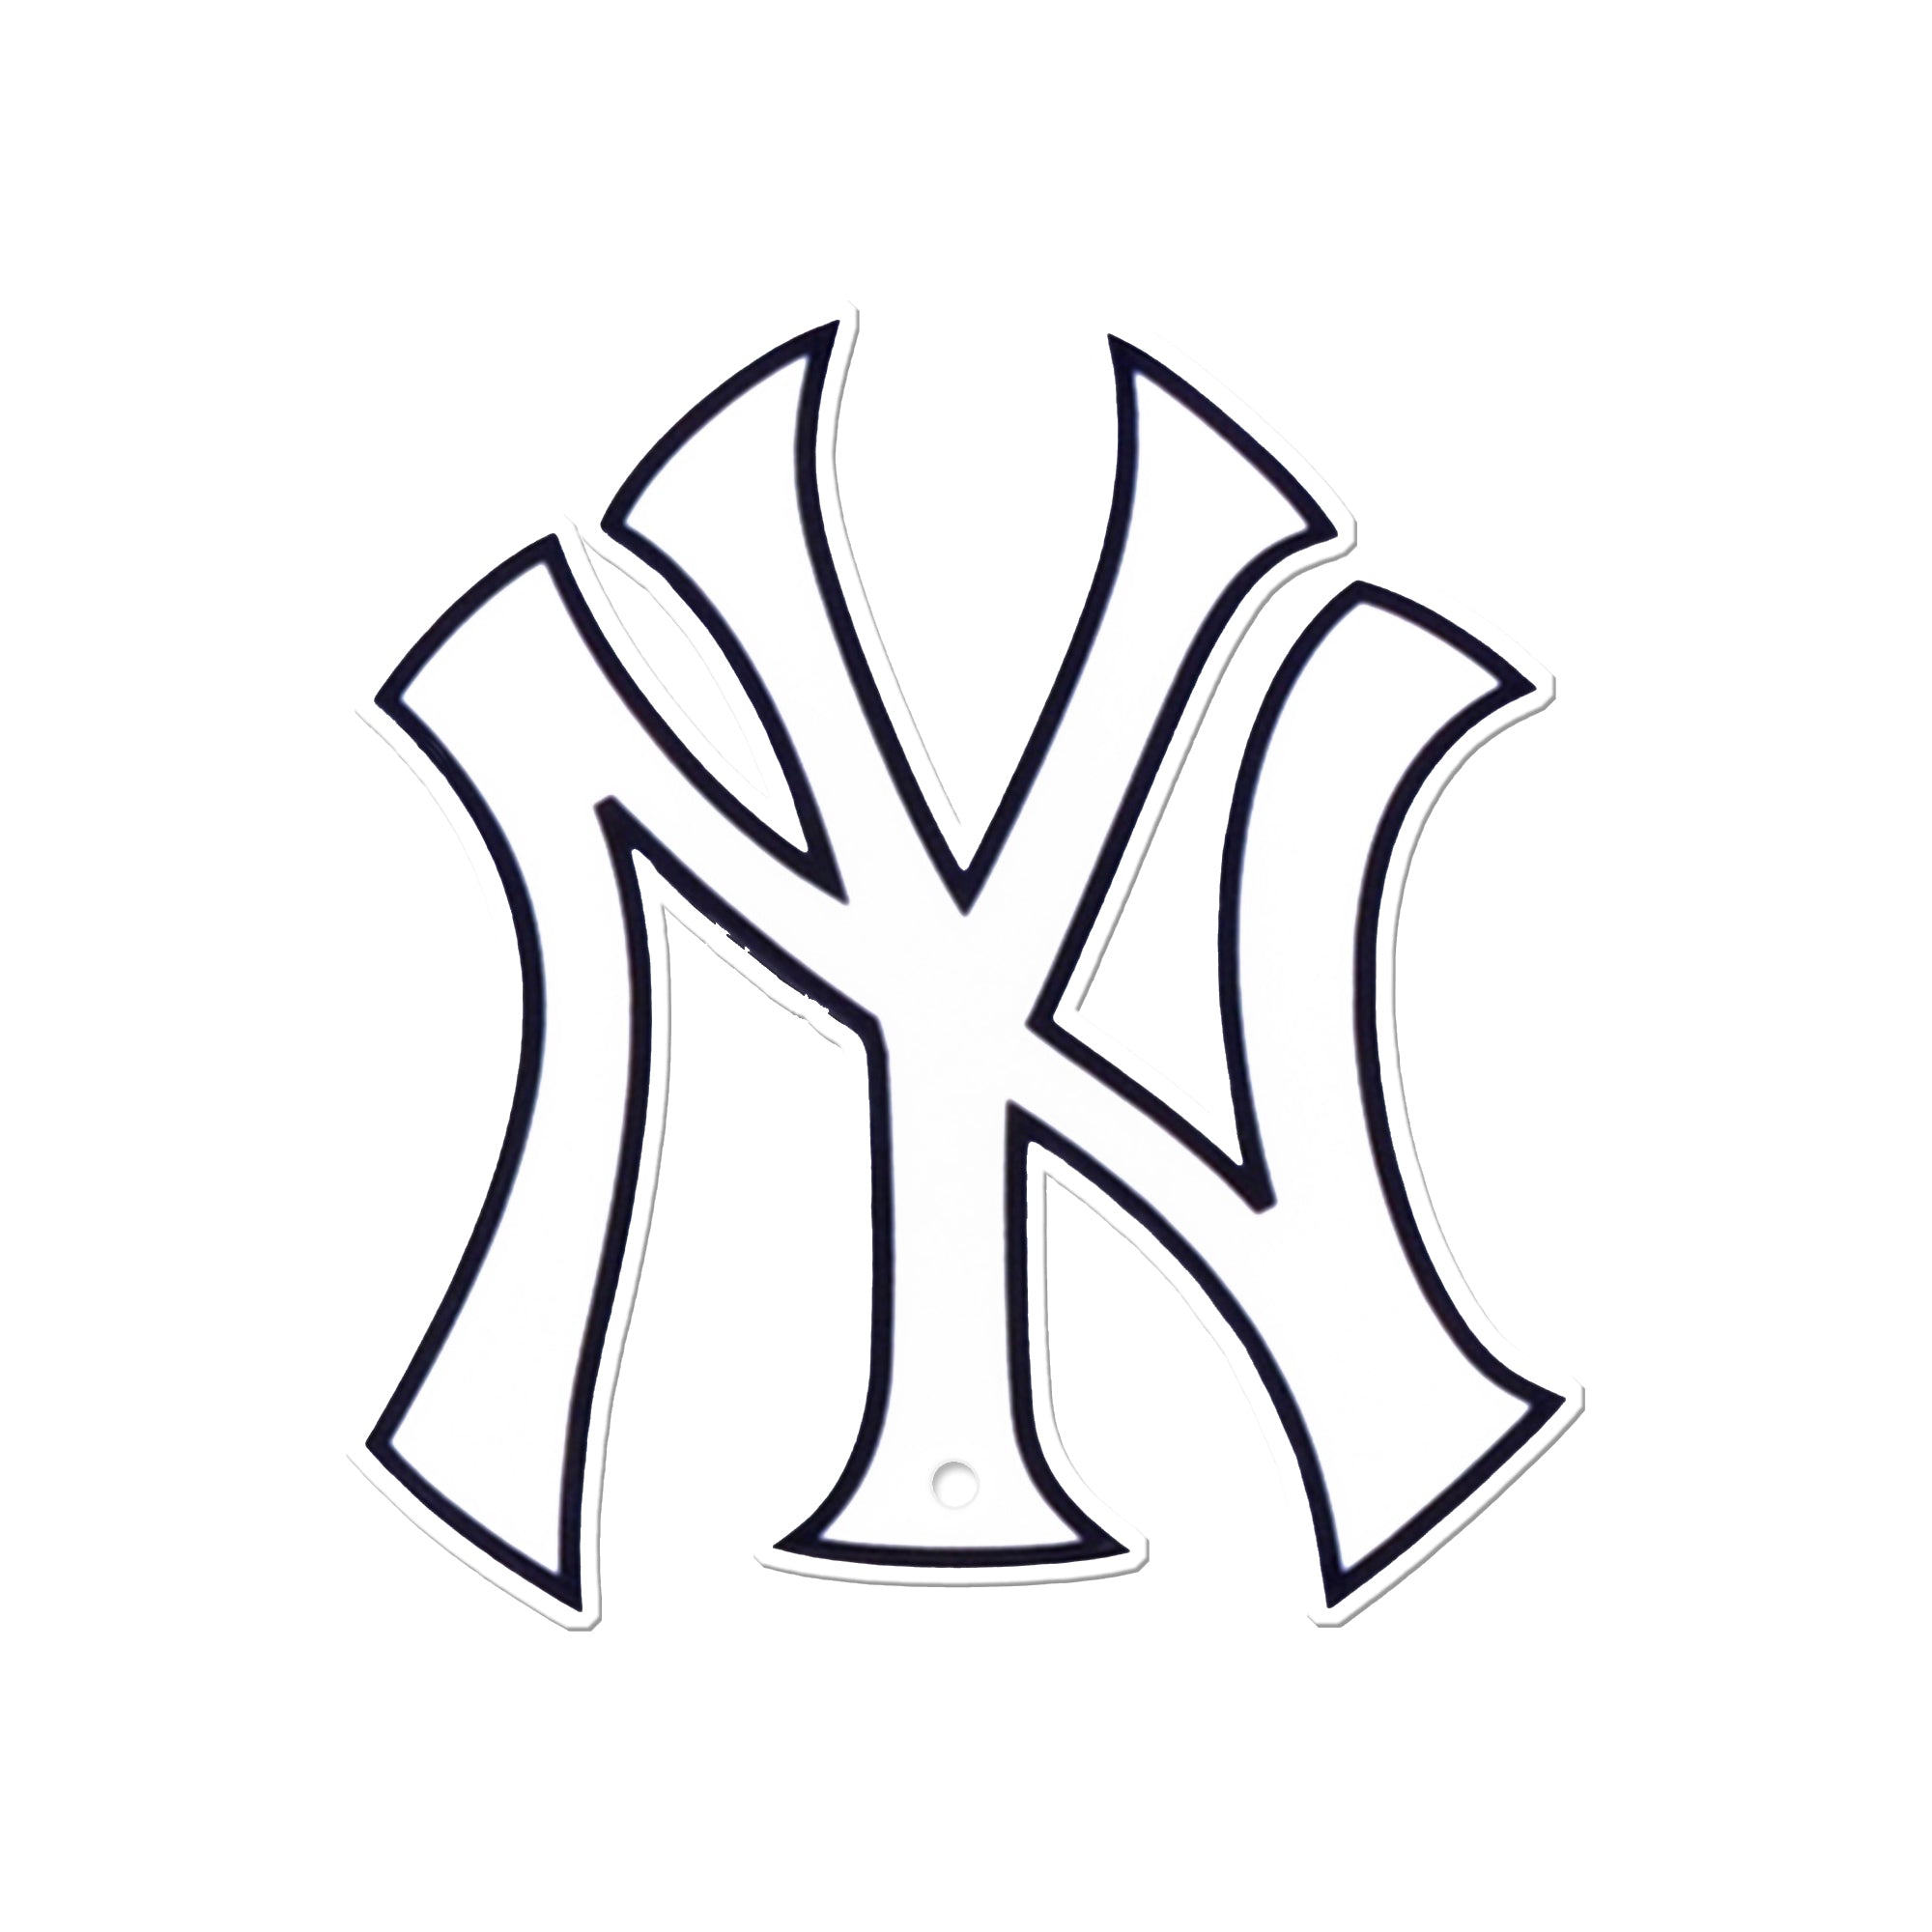 New York Yankees Black Fan Jerseys for sale